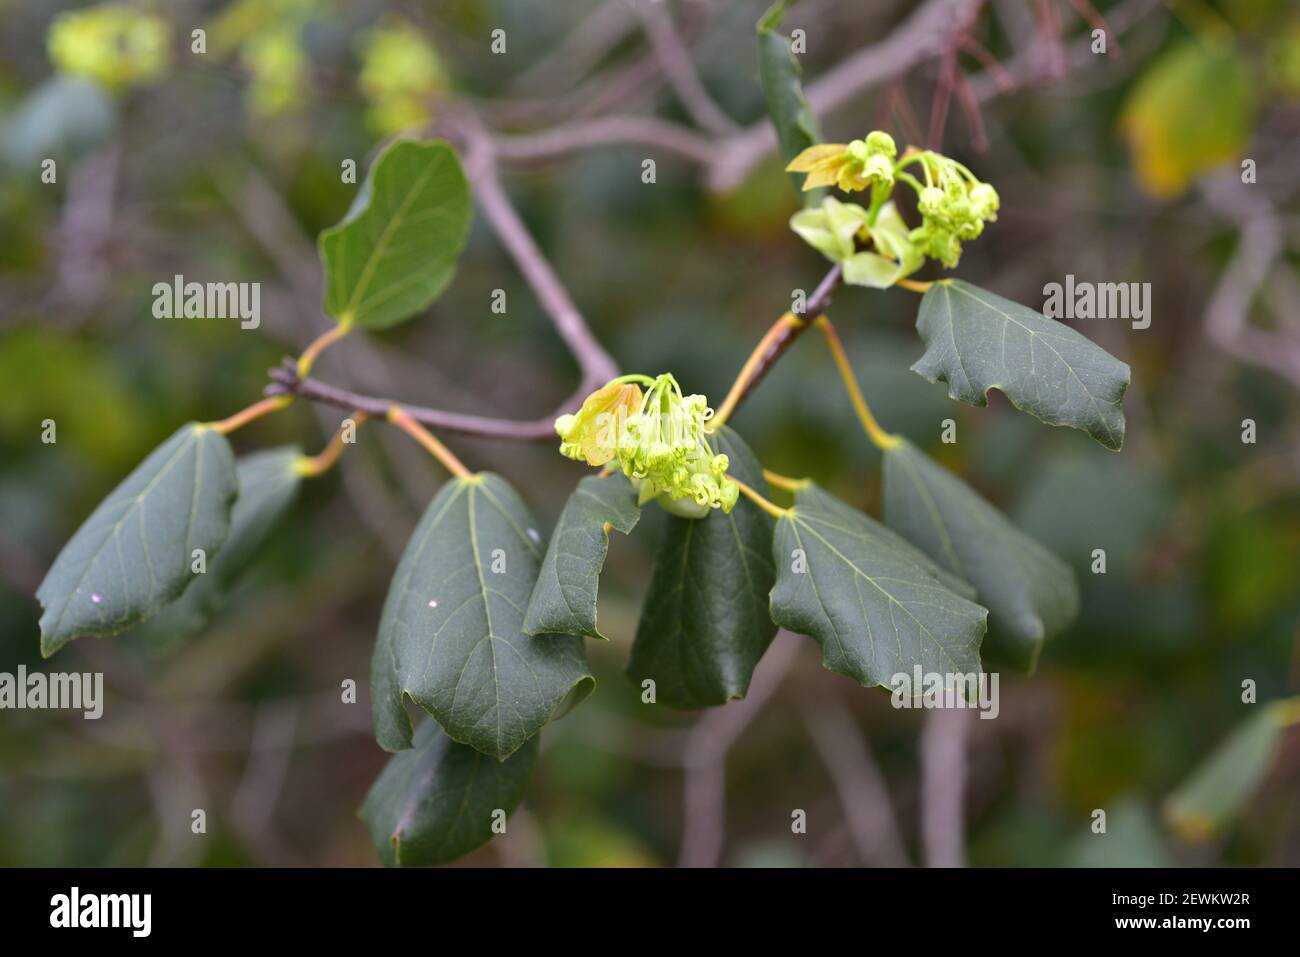 Syrischer Ahorn (Acer obtusifolium) ist ein immergrüner kleiner Baum, der im östlichen Mittelmeerraum beheimatet ist. Blumen und Blätter Detail. Stockfoto